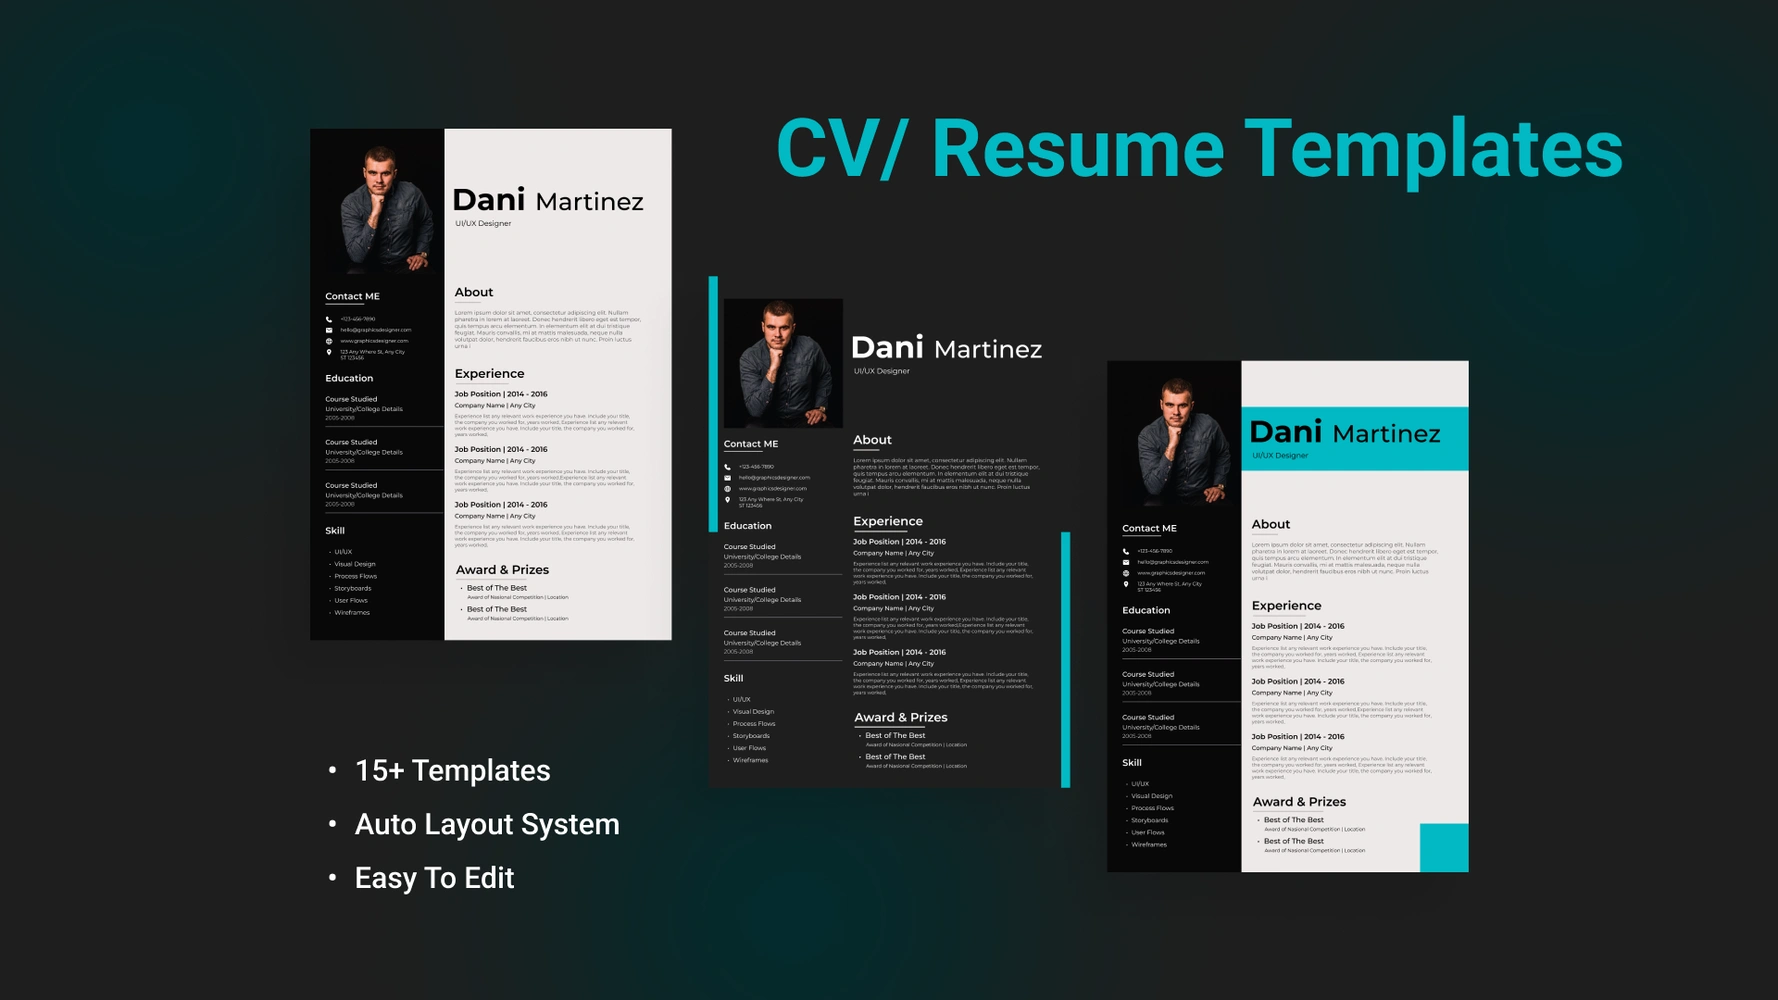 Resume / CV Templates Kit by Shazzade
